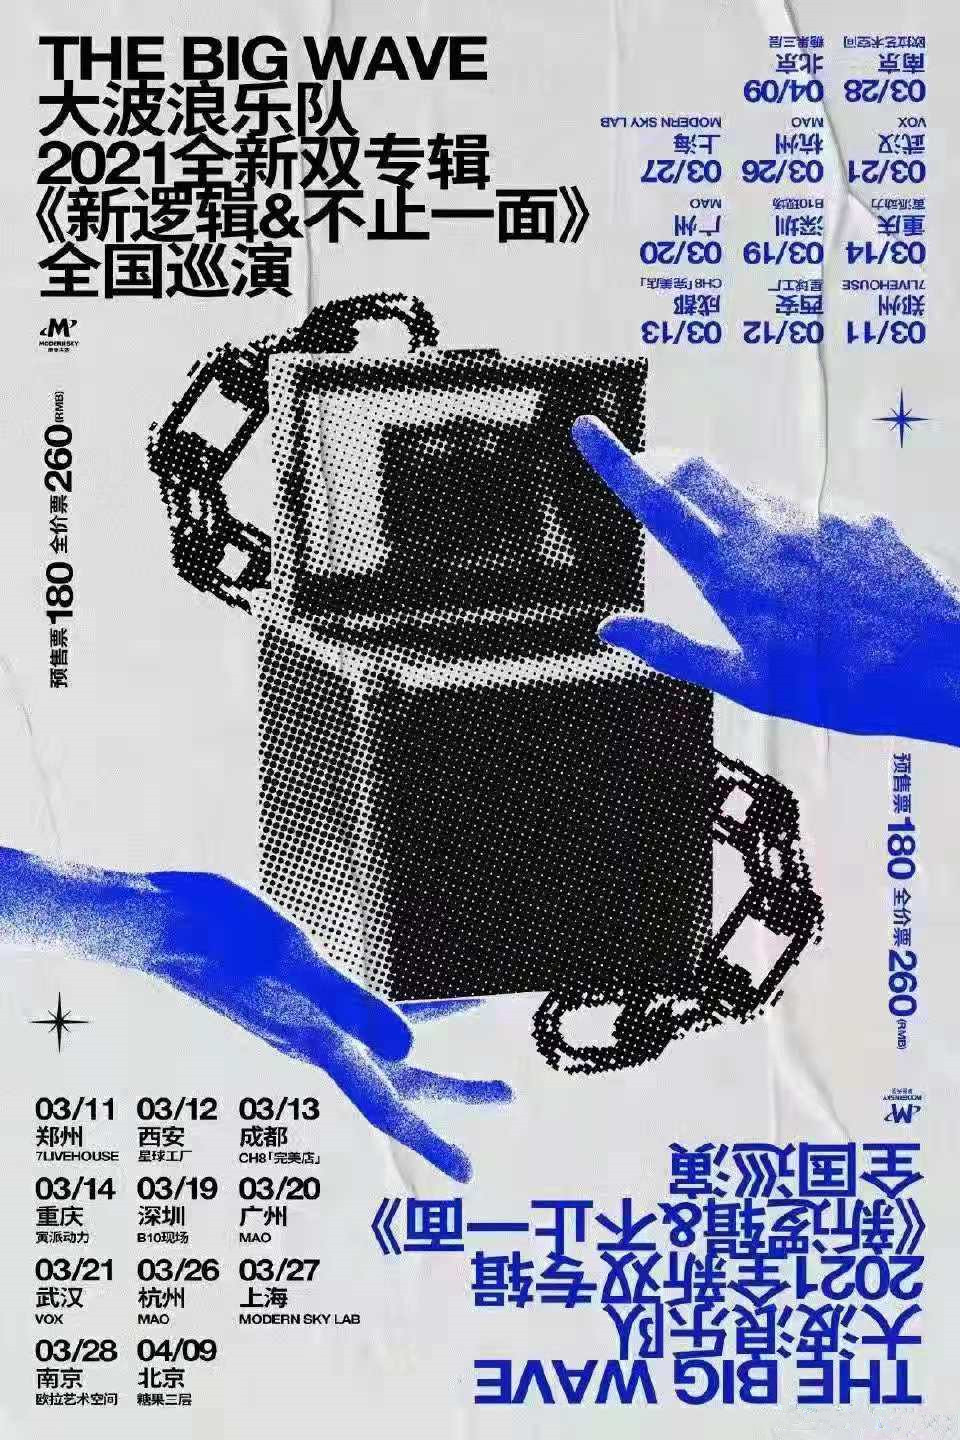 大波浪乐队2021全新双专辑巡演《新逻辑》《不止一面》全国巡演-广州站